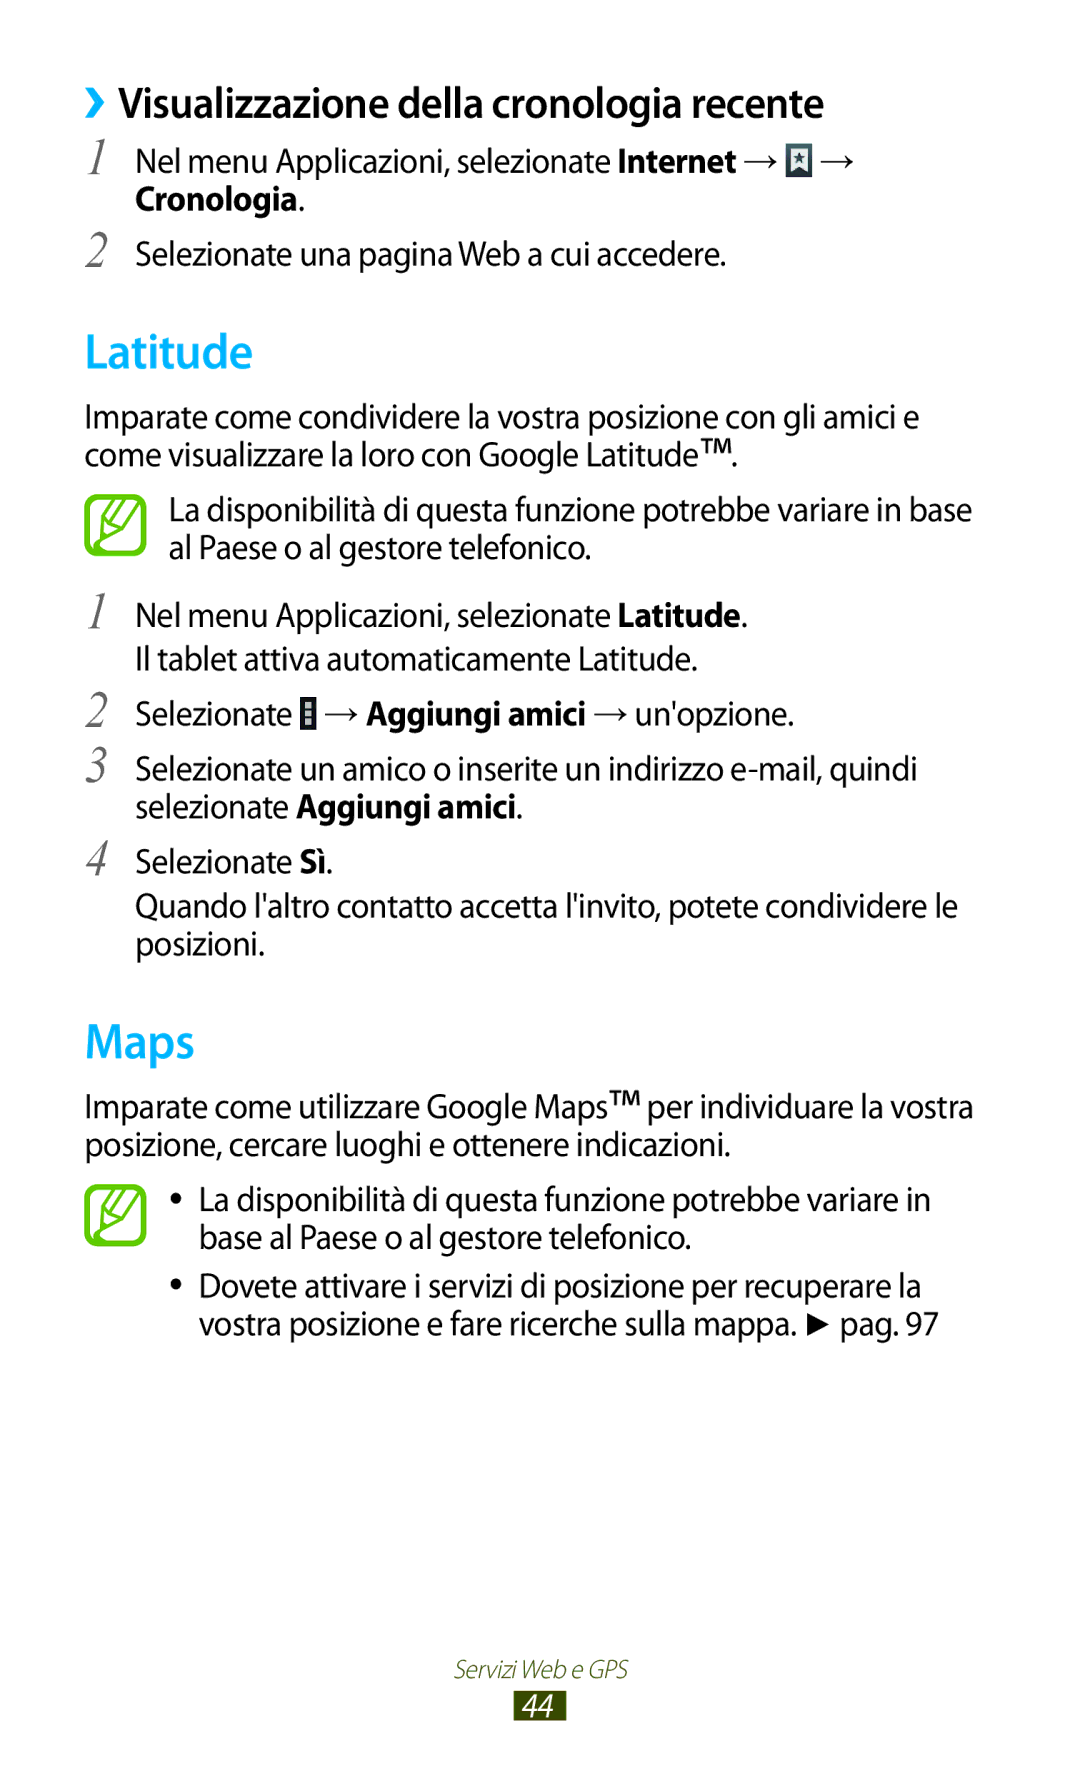 Samsung GT-P7500UWDOMN, GT-P7500FKDOMN, GT-P7500UWDHUI manual Latitude, Maps, ››Visualizzazione della cronologia recente 